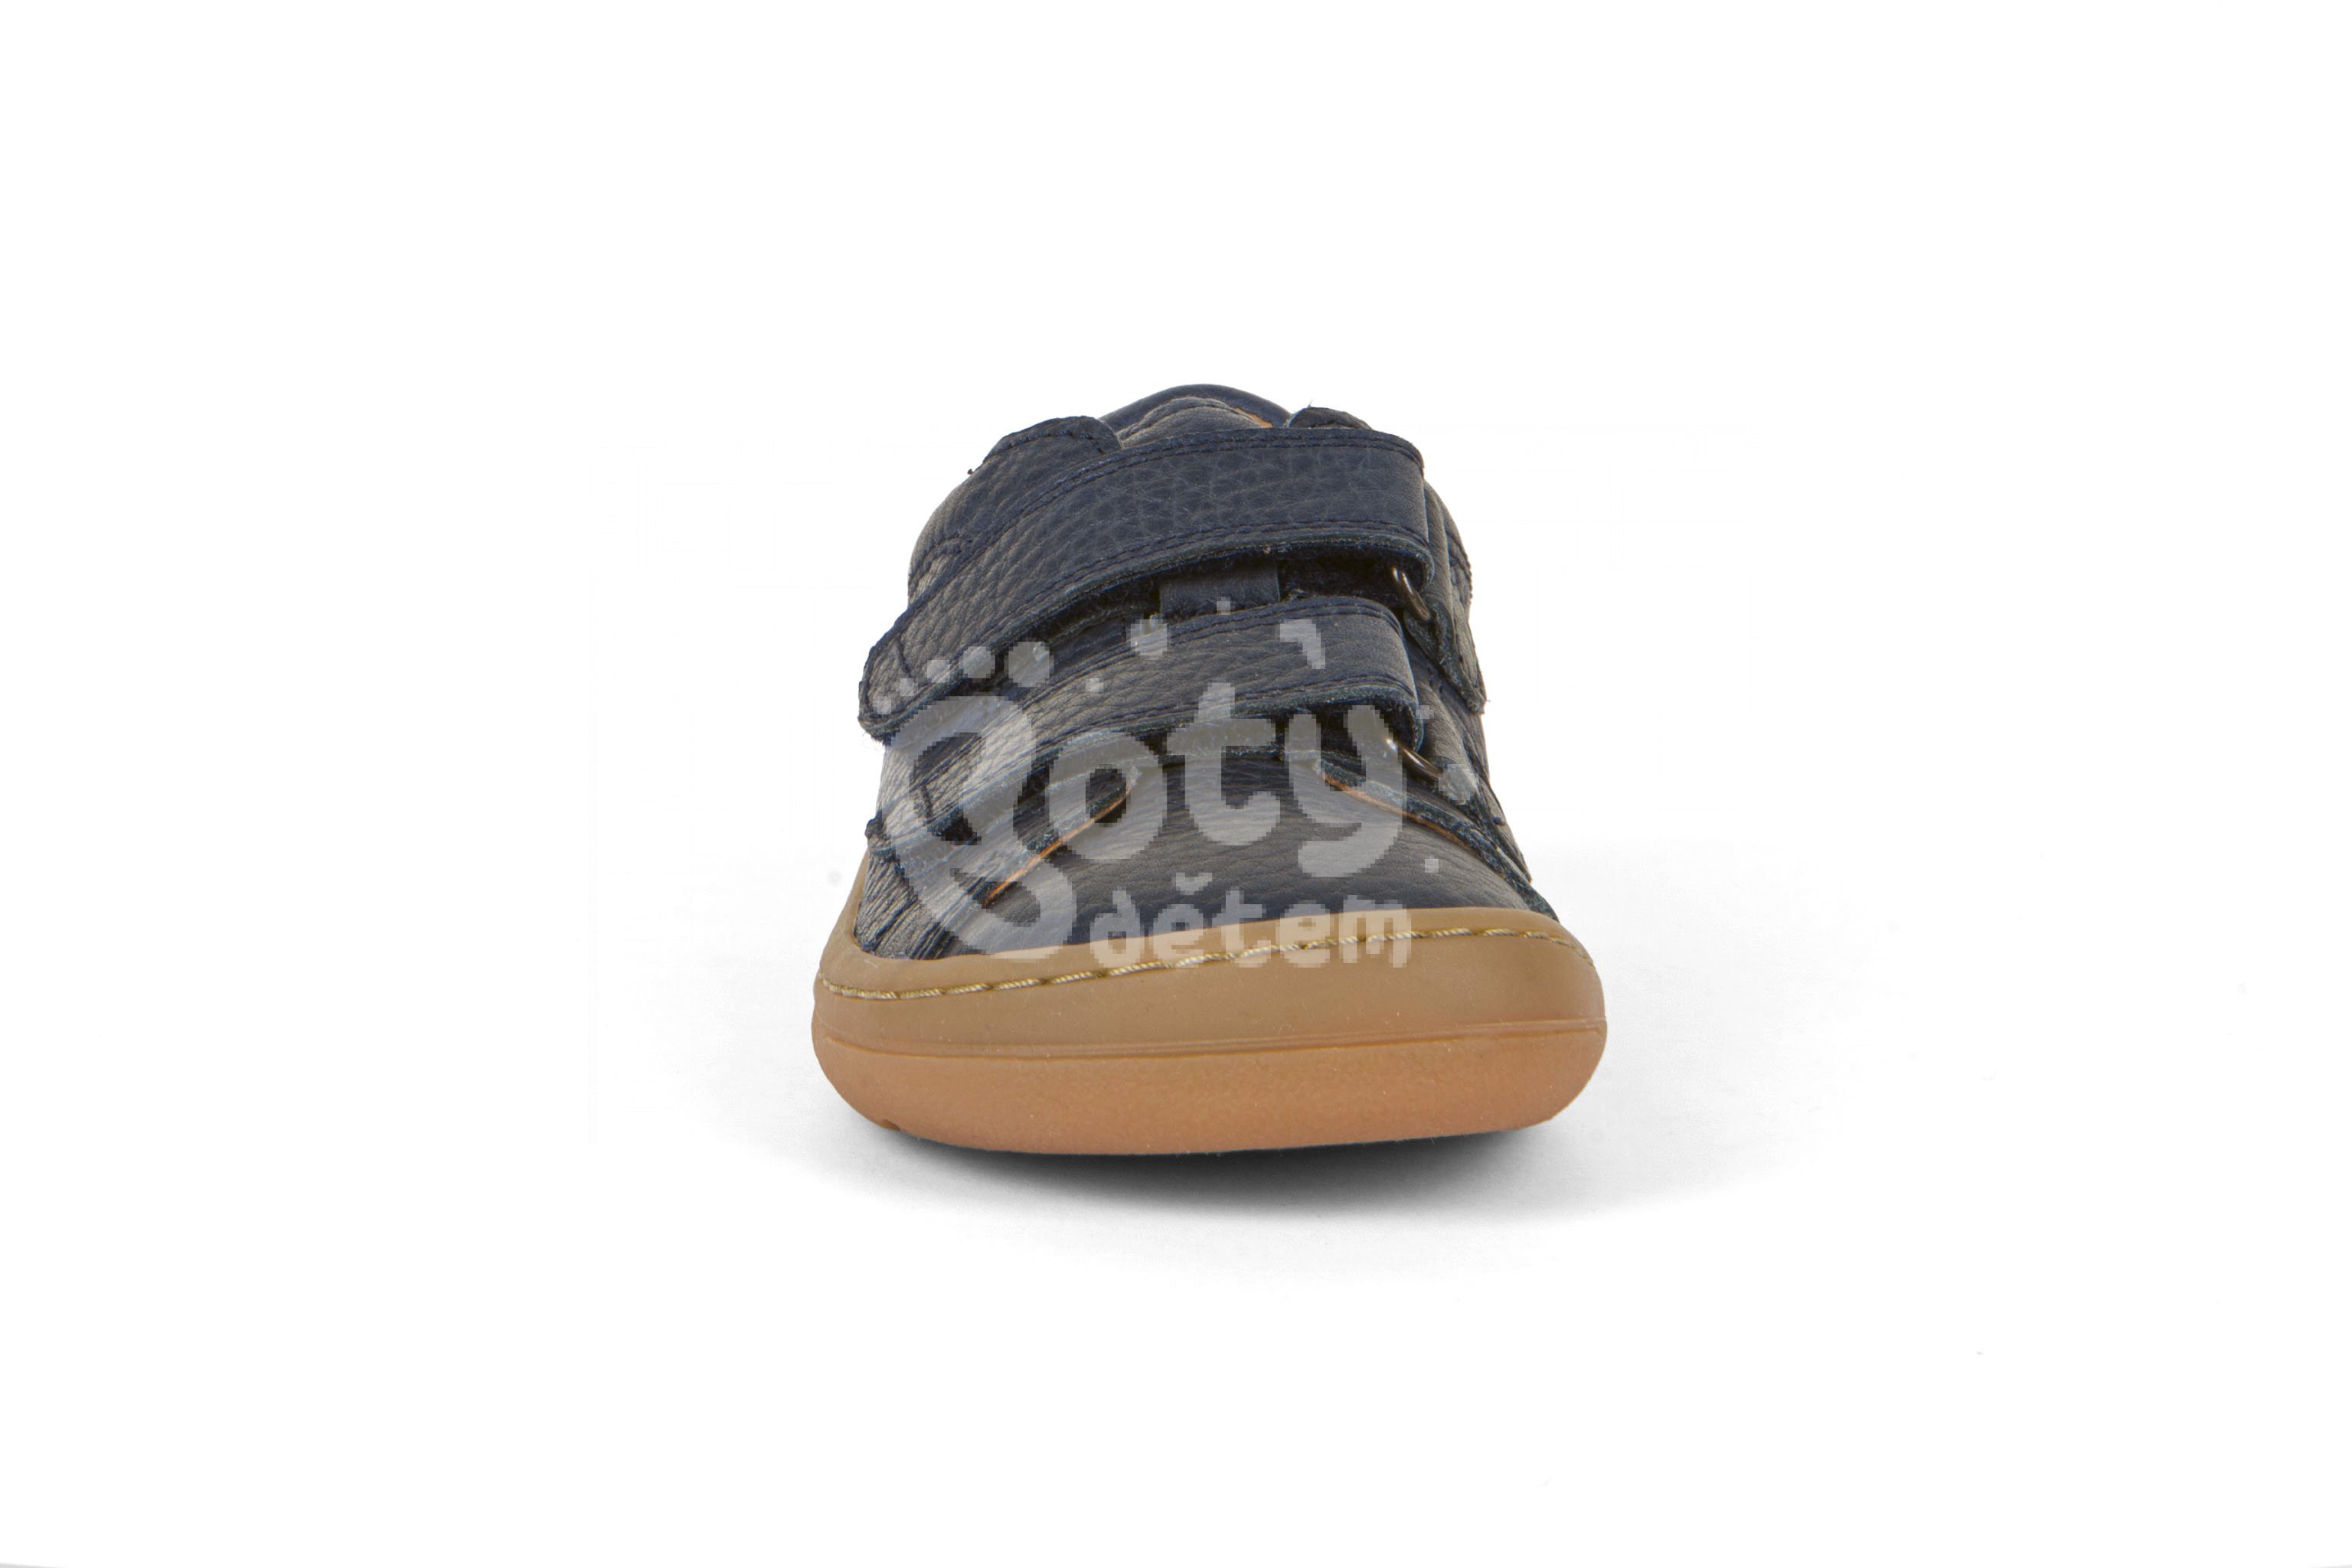 Froddo barefoot boty G3130201-5 blue